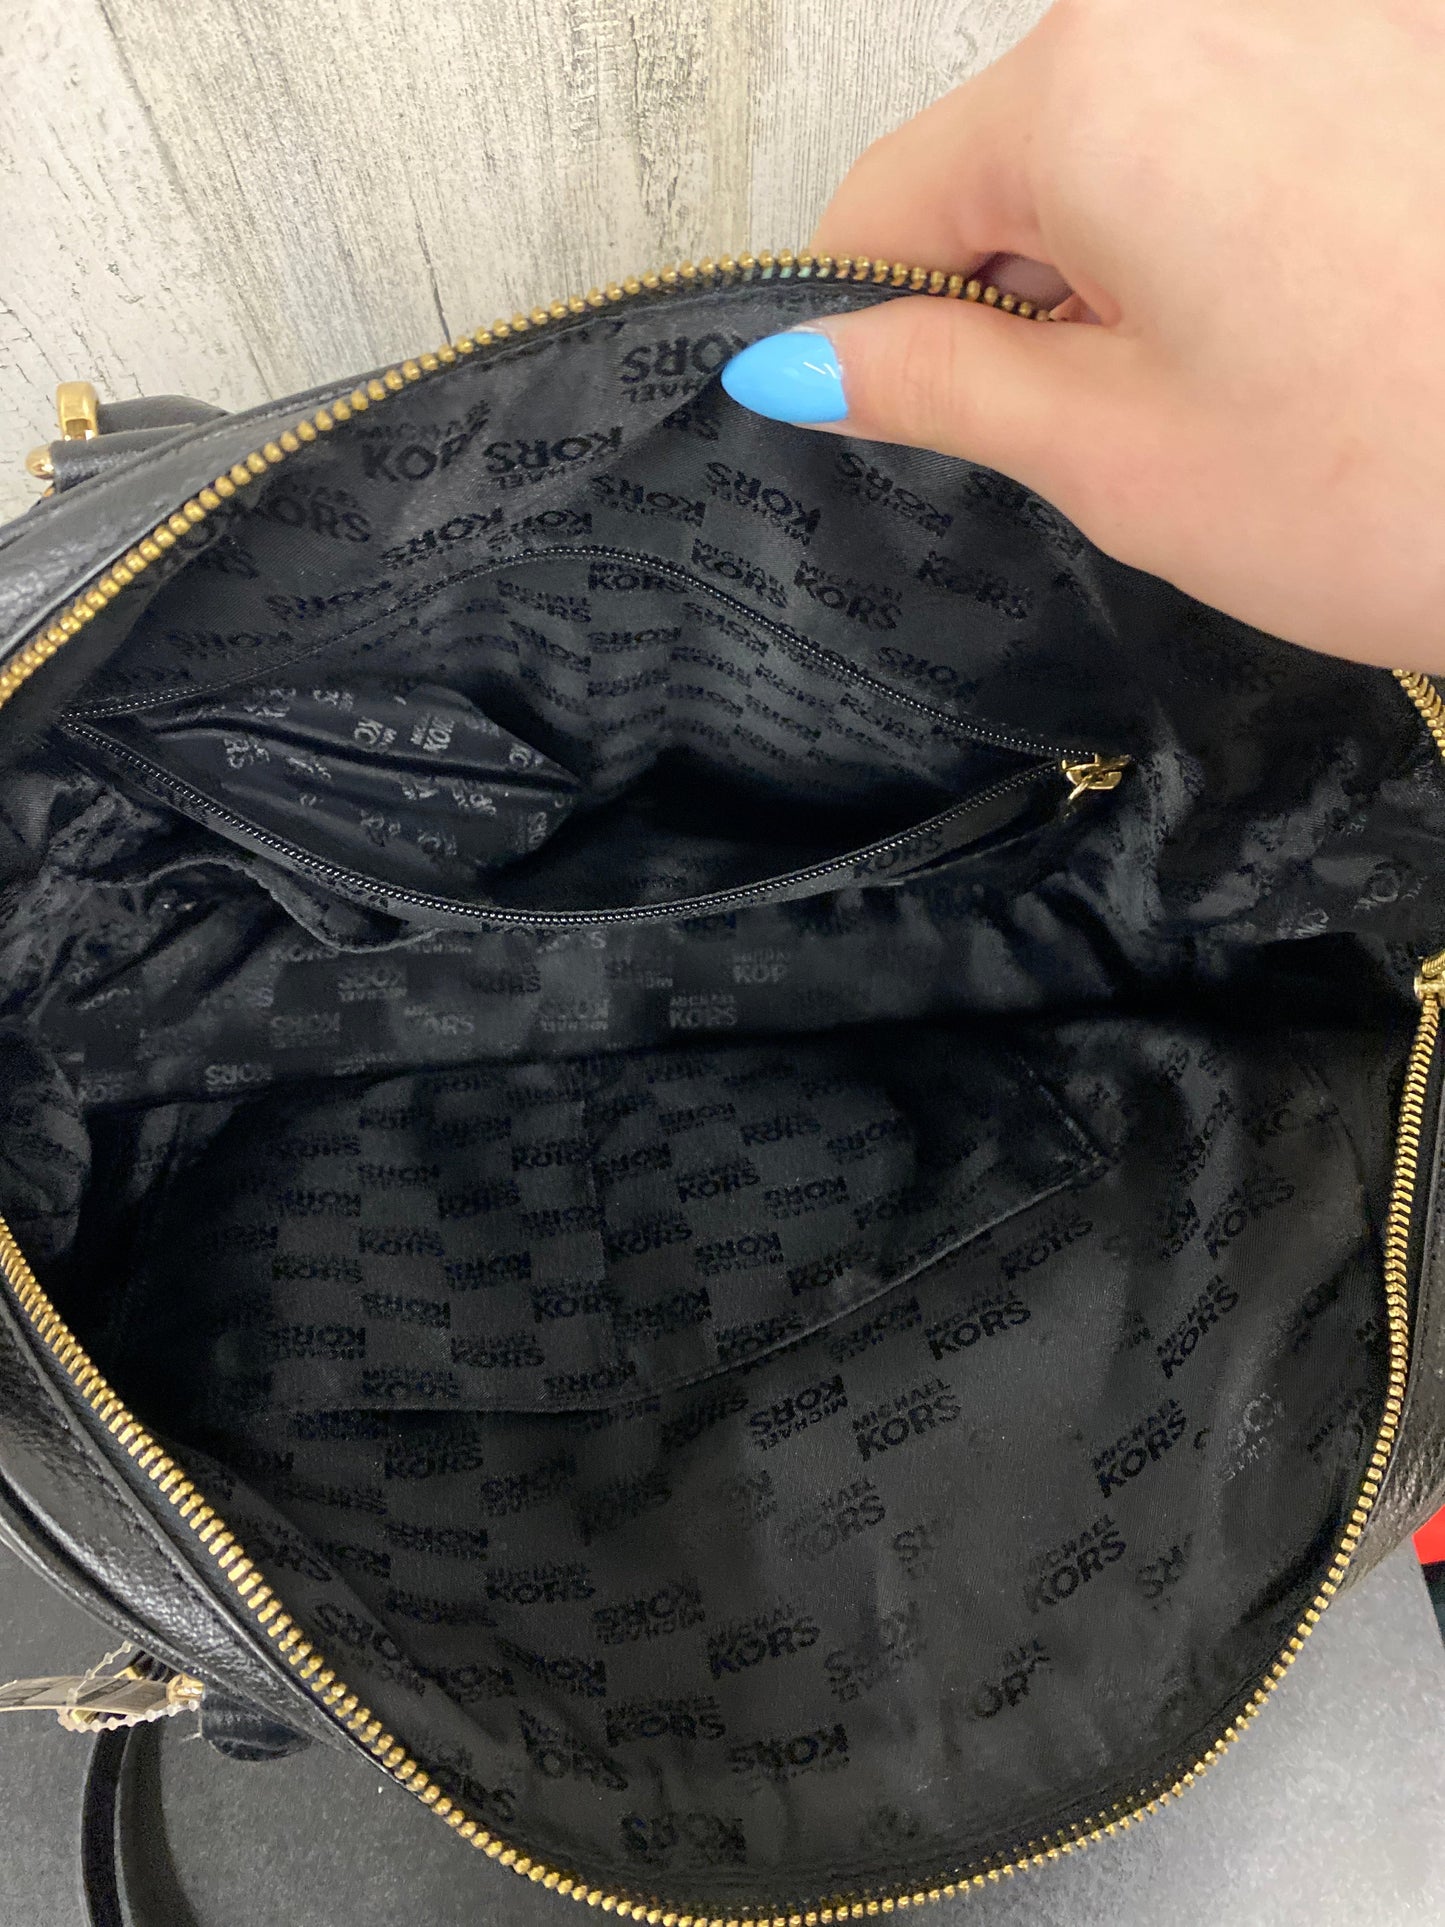 Handbag Designer By Michael Kors  Size: Large